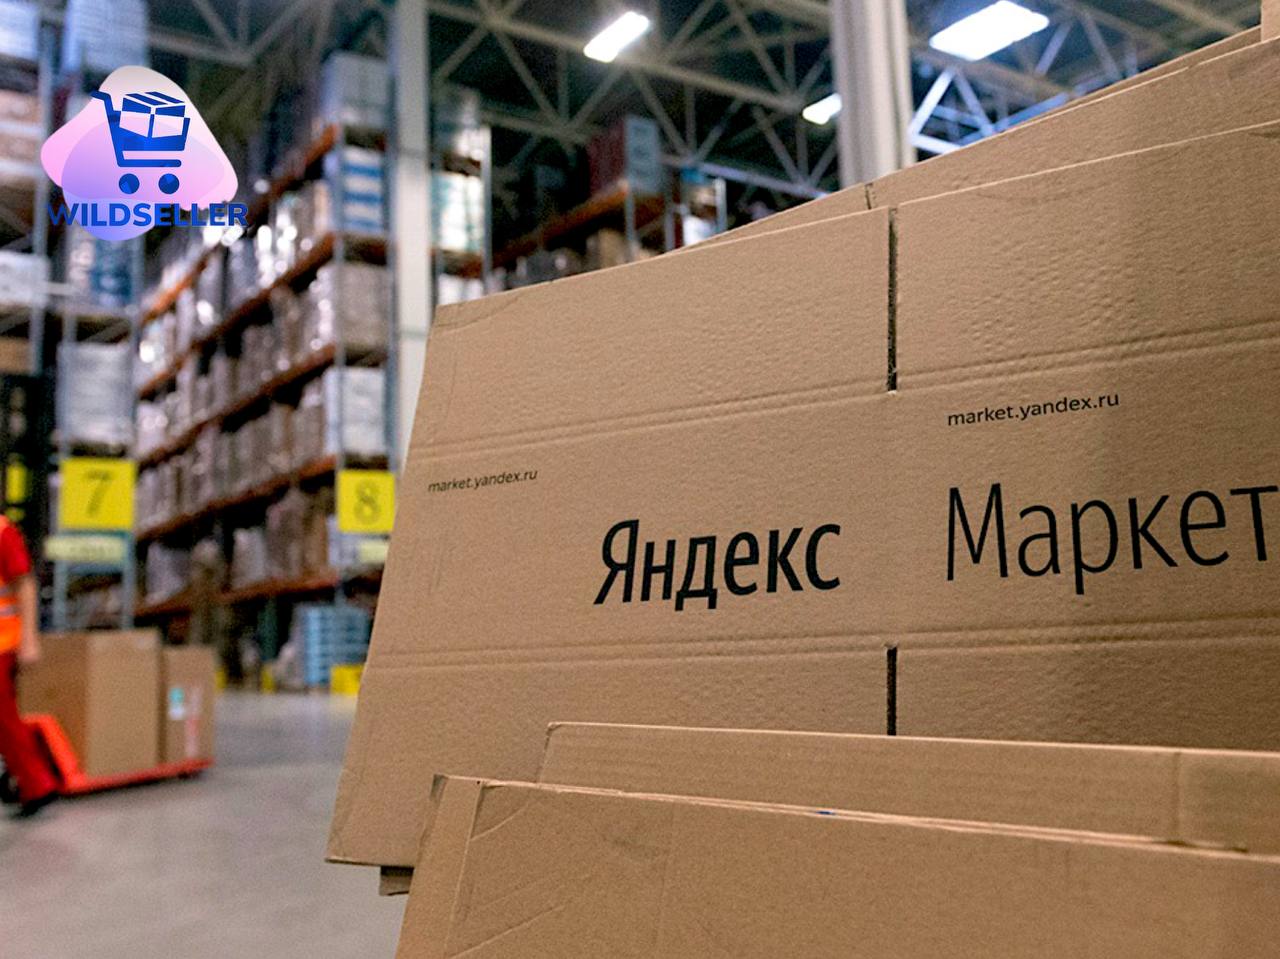 Яндекс.Маркет переходит с коробок для доставки на курьерские пакеты